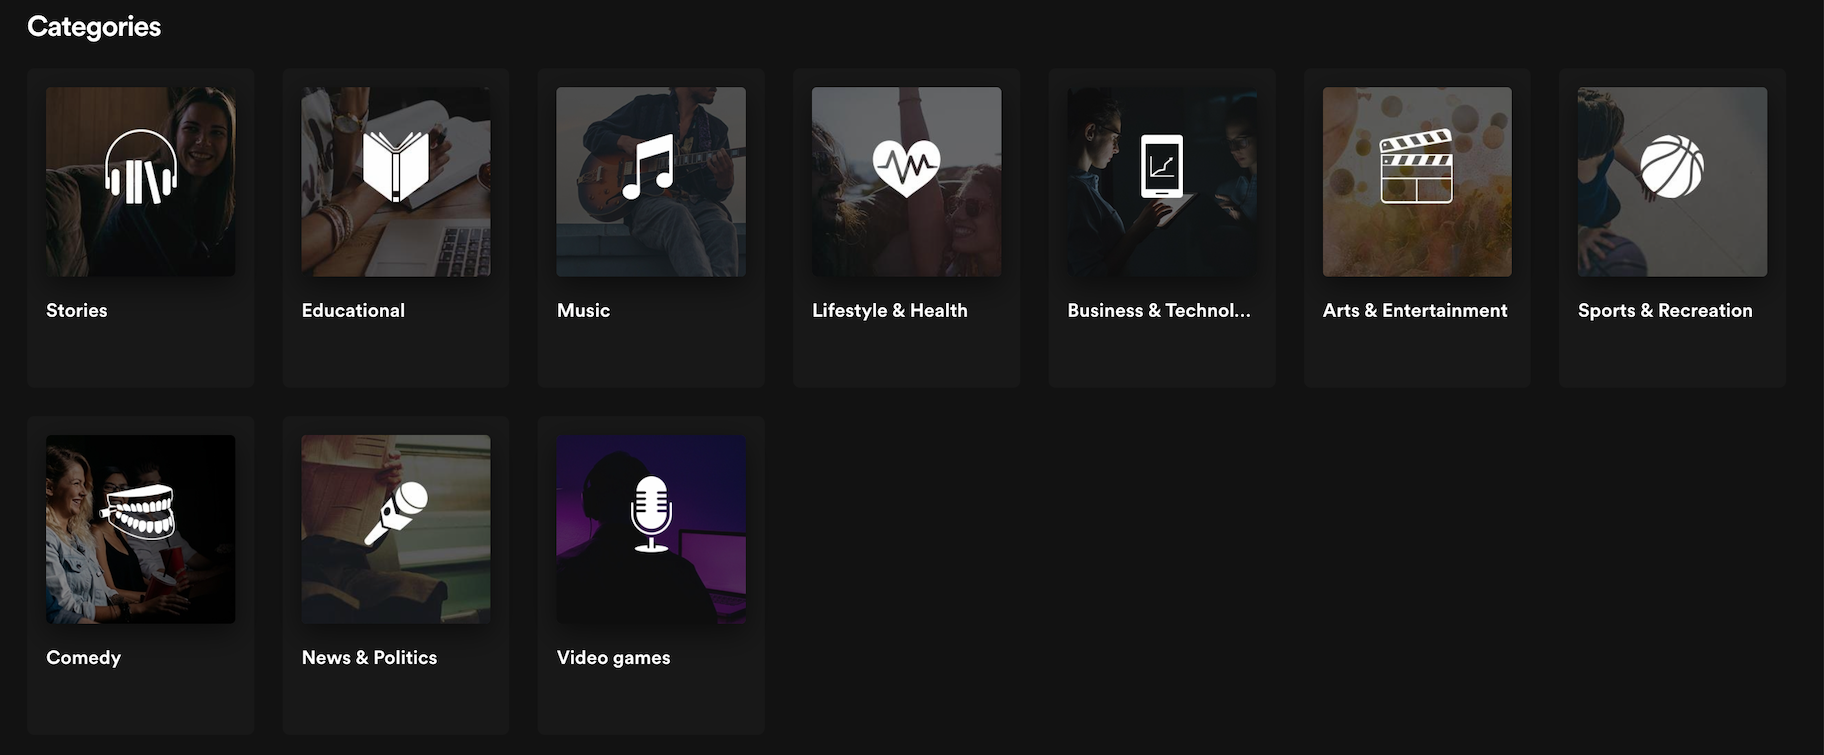 Principales categorías de podcasts de Spotify